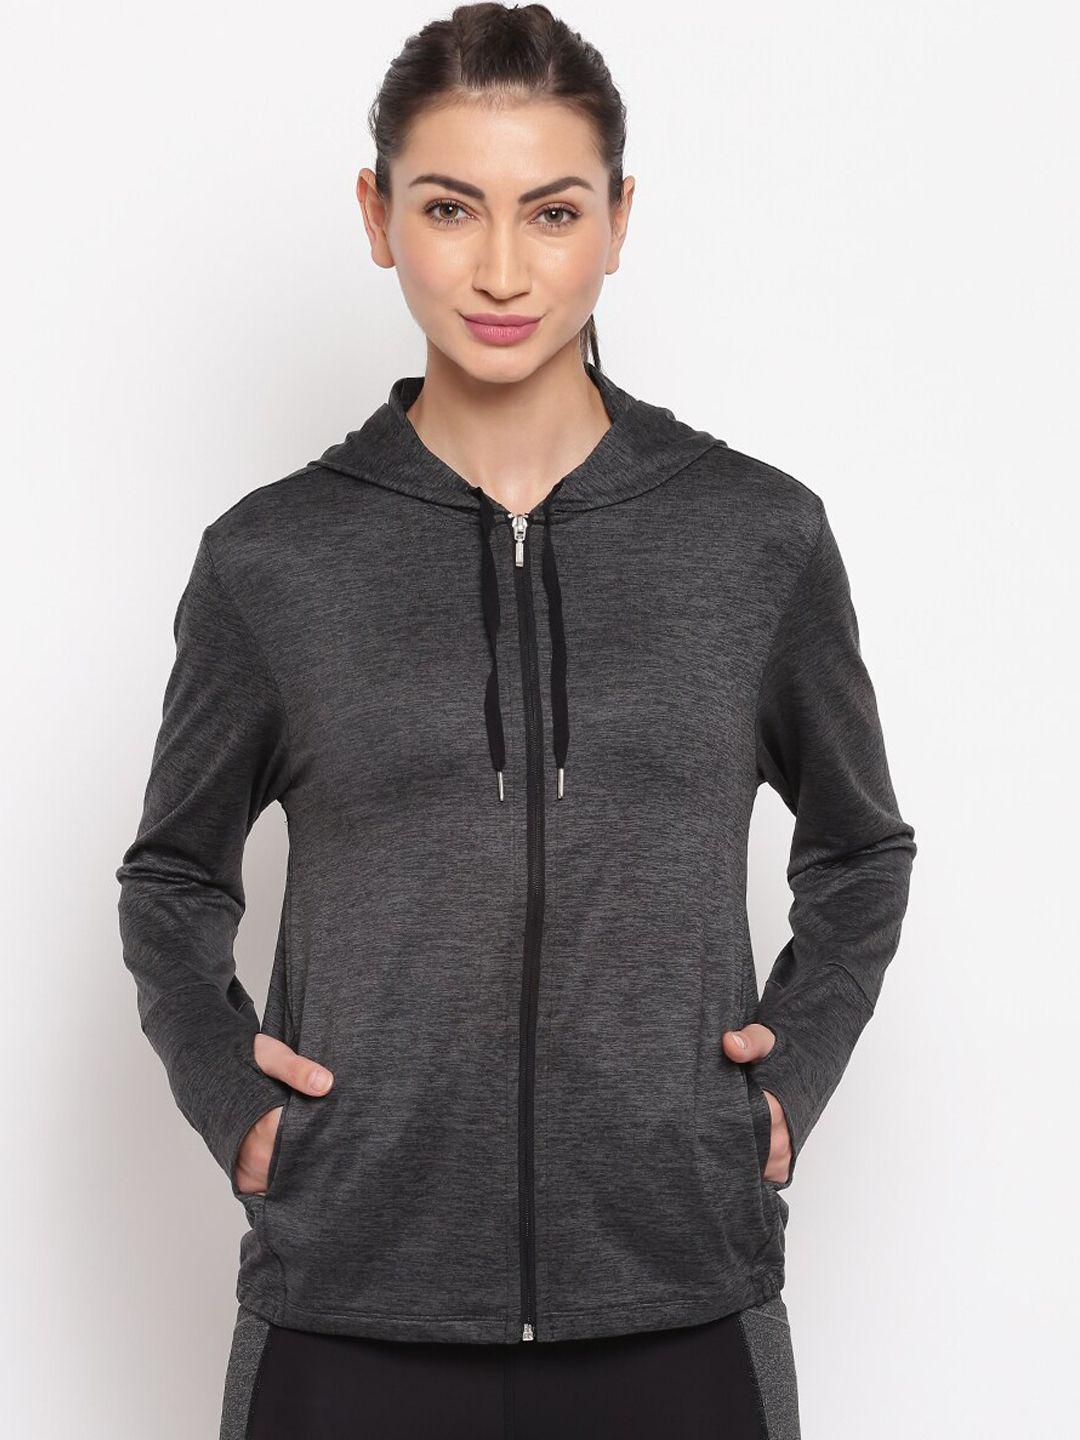 enamor-women-black-relaxed-fit-hoodie-active-jacket